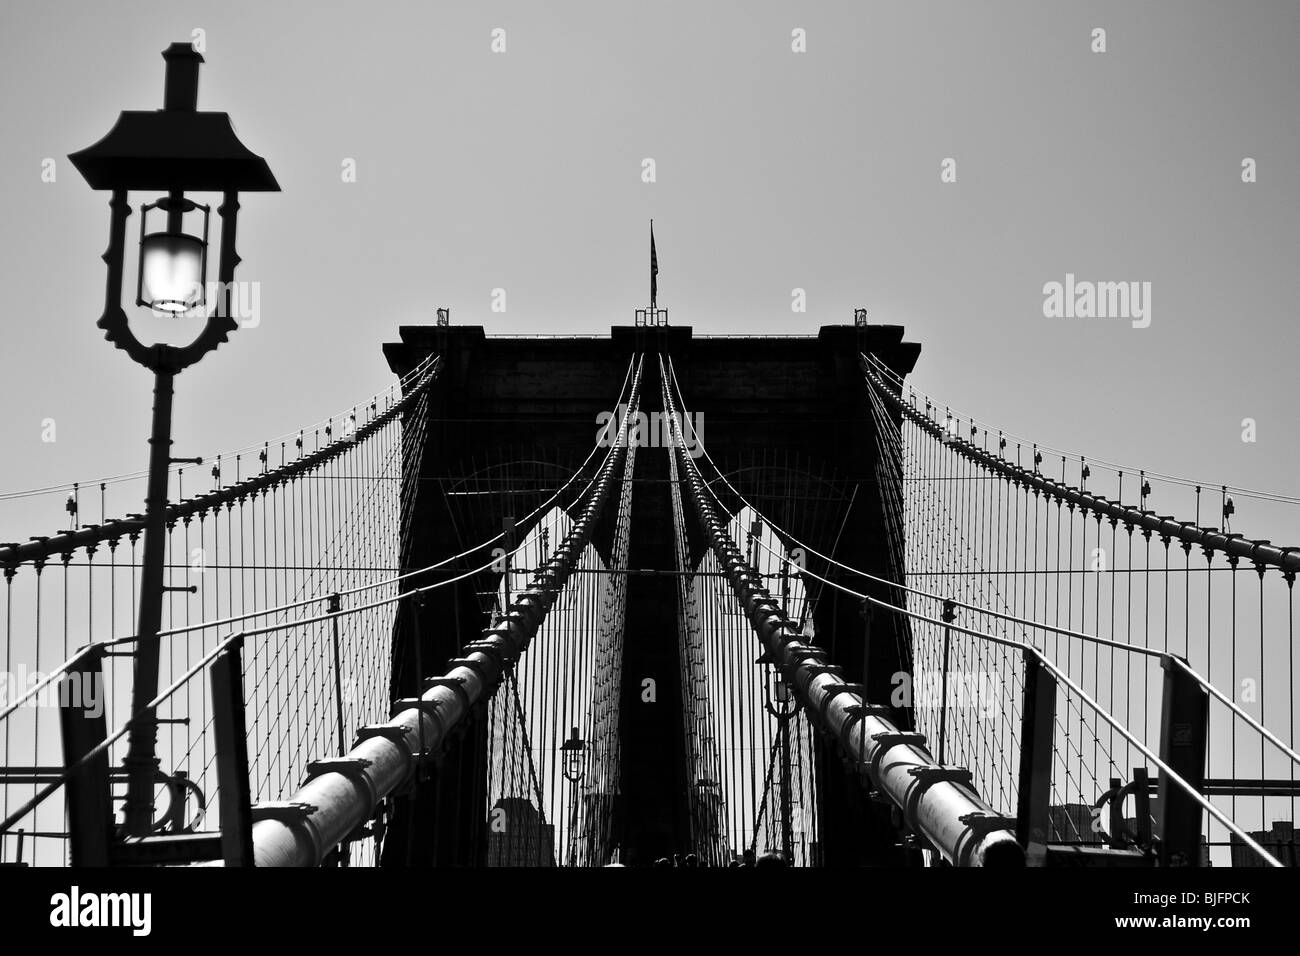 Estudio de la silueta en blanco y negro del Puente de Brooklyn, Nueva York - Septiembre 2009 Foto de stock